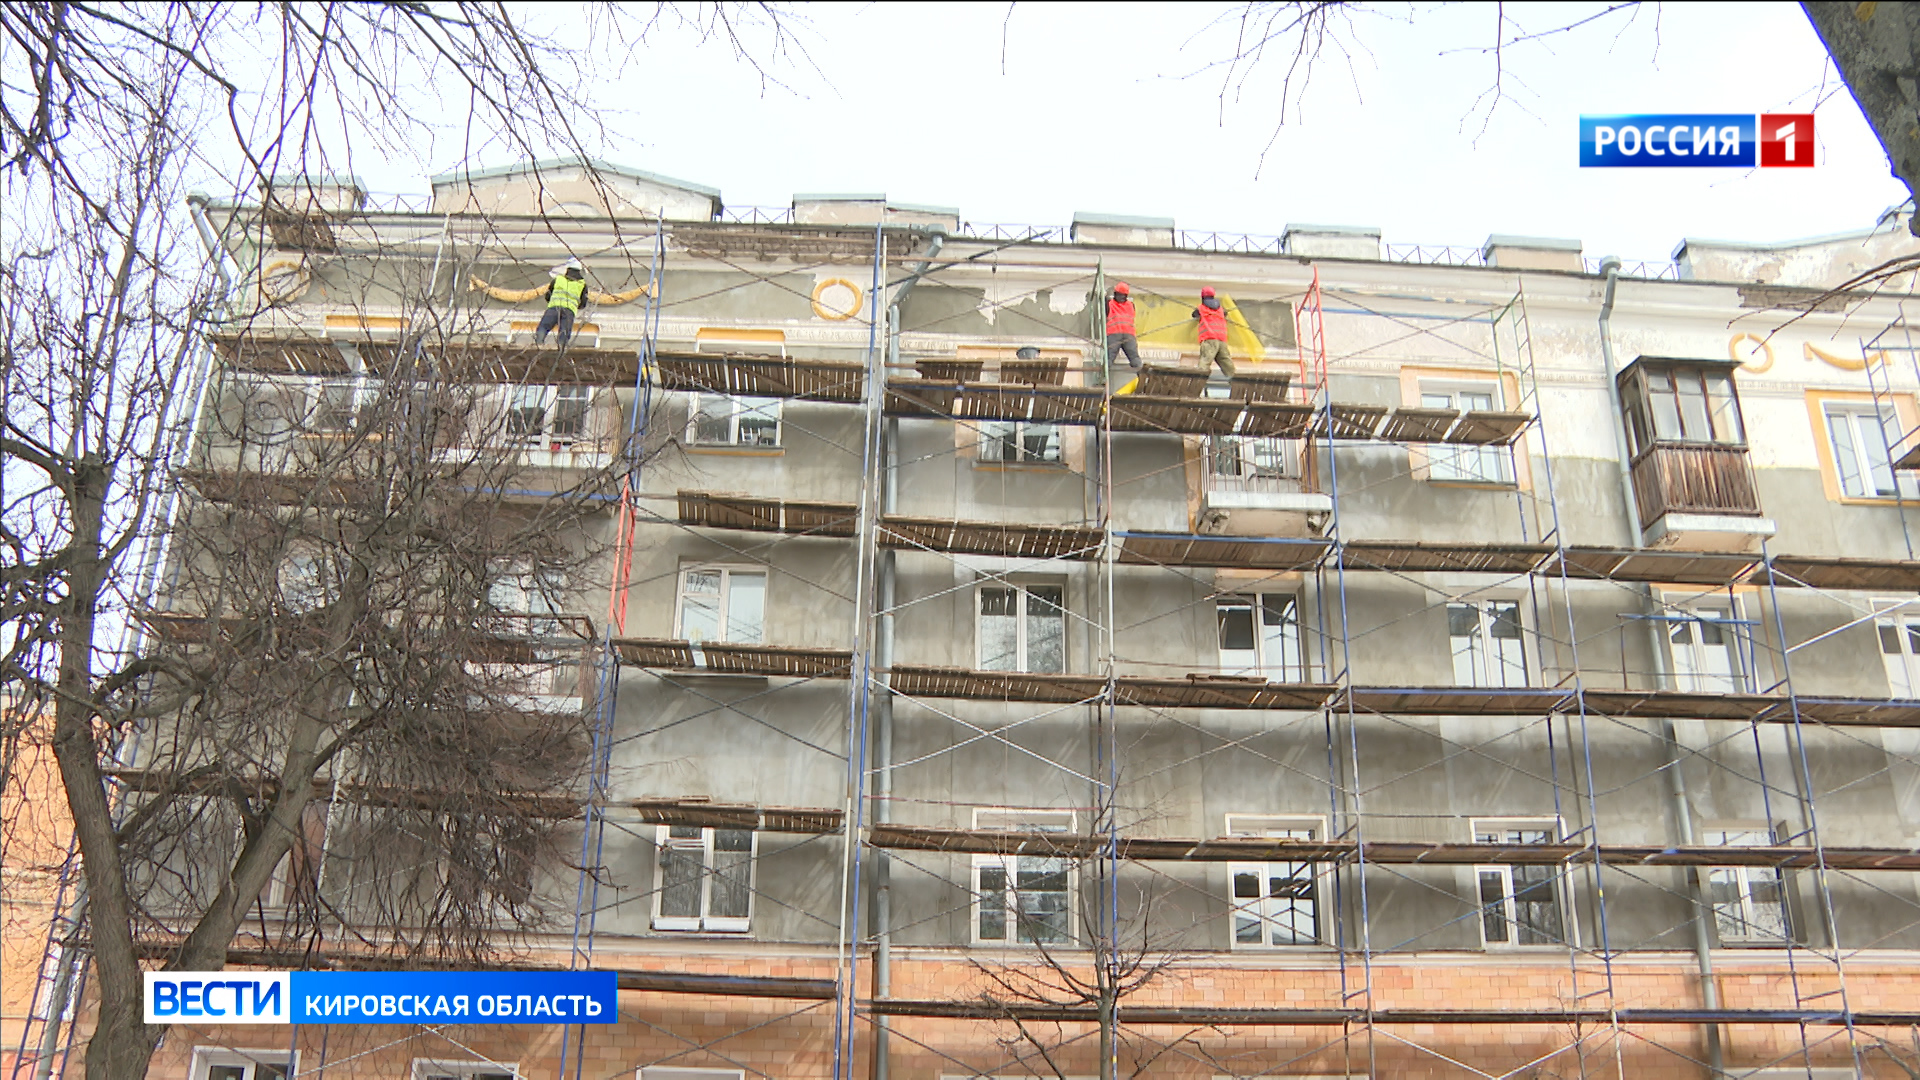 Все жилые дома рядом с Вечным огнем в Кирове ремонтируют